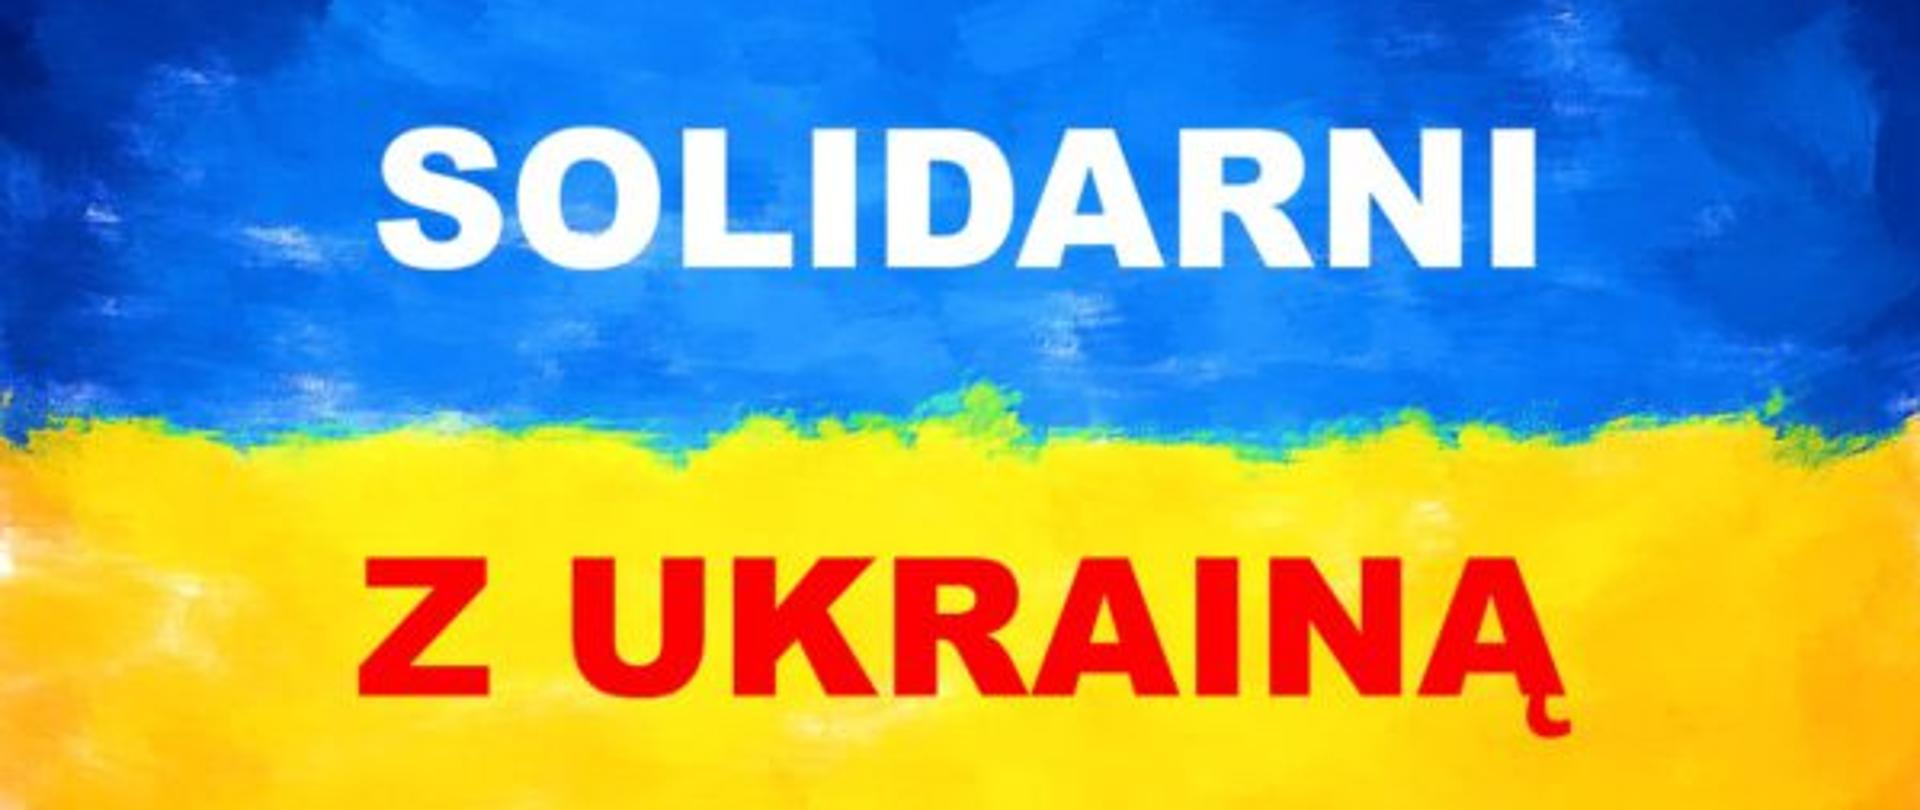 Baner solidarni z Ukrainą